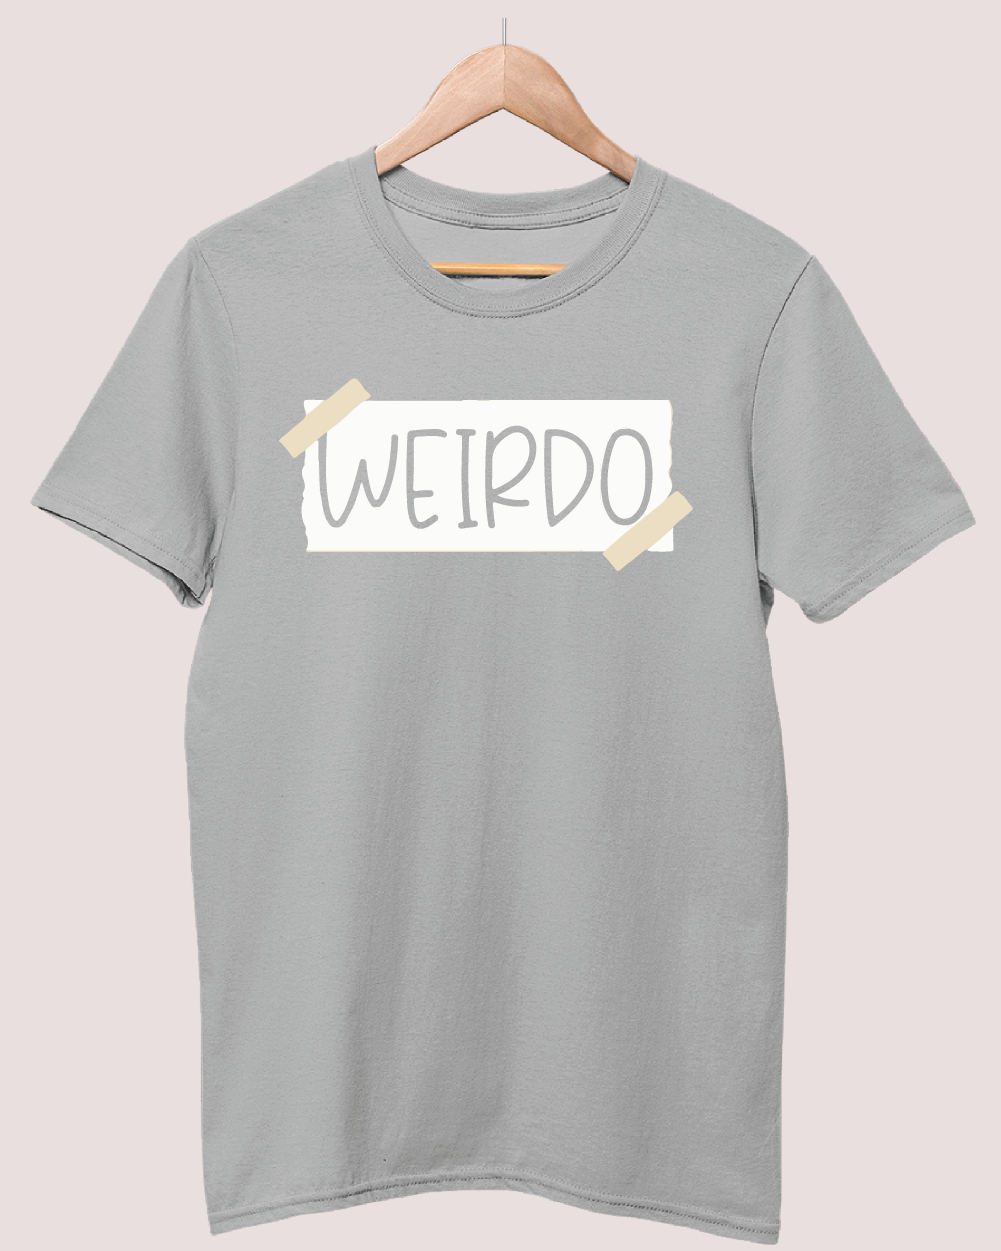 Weirdo t-shirt